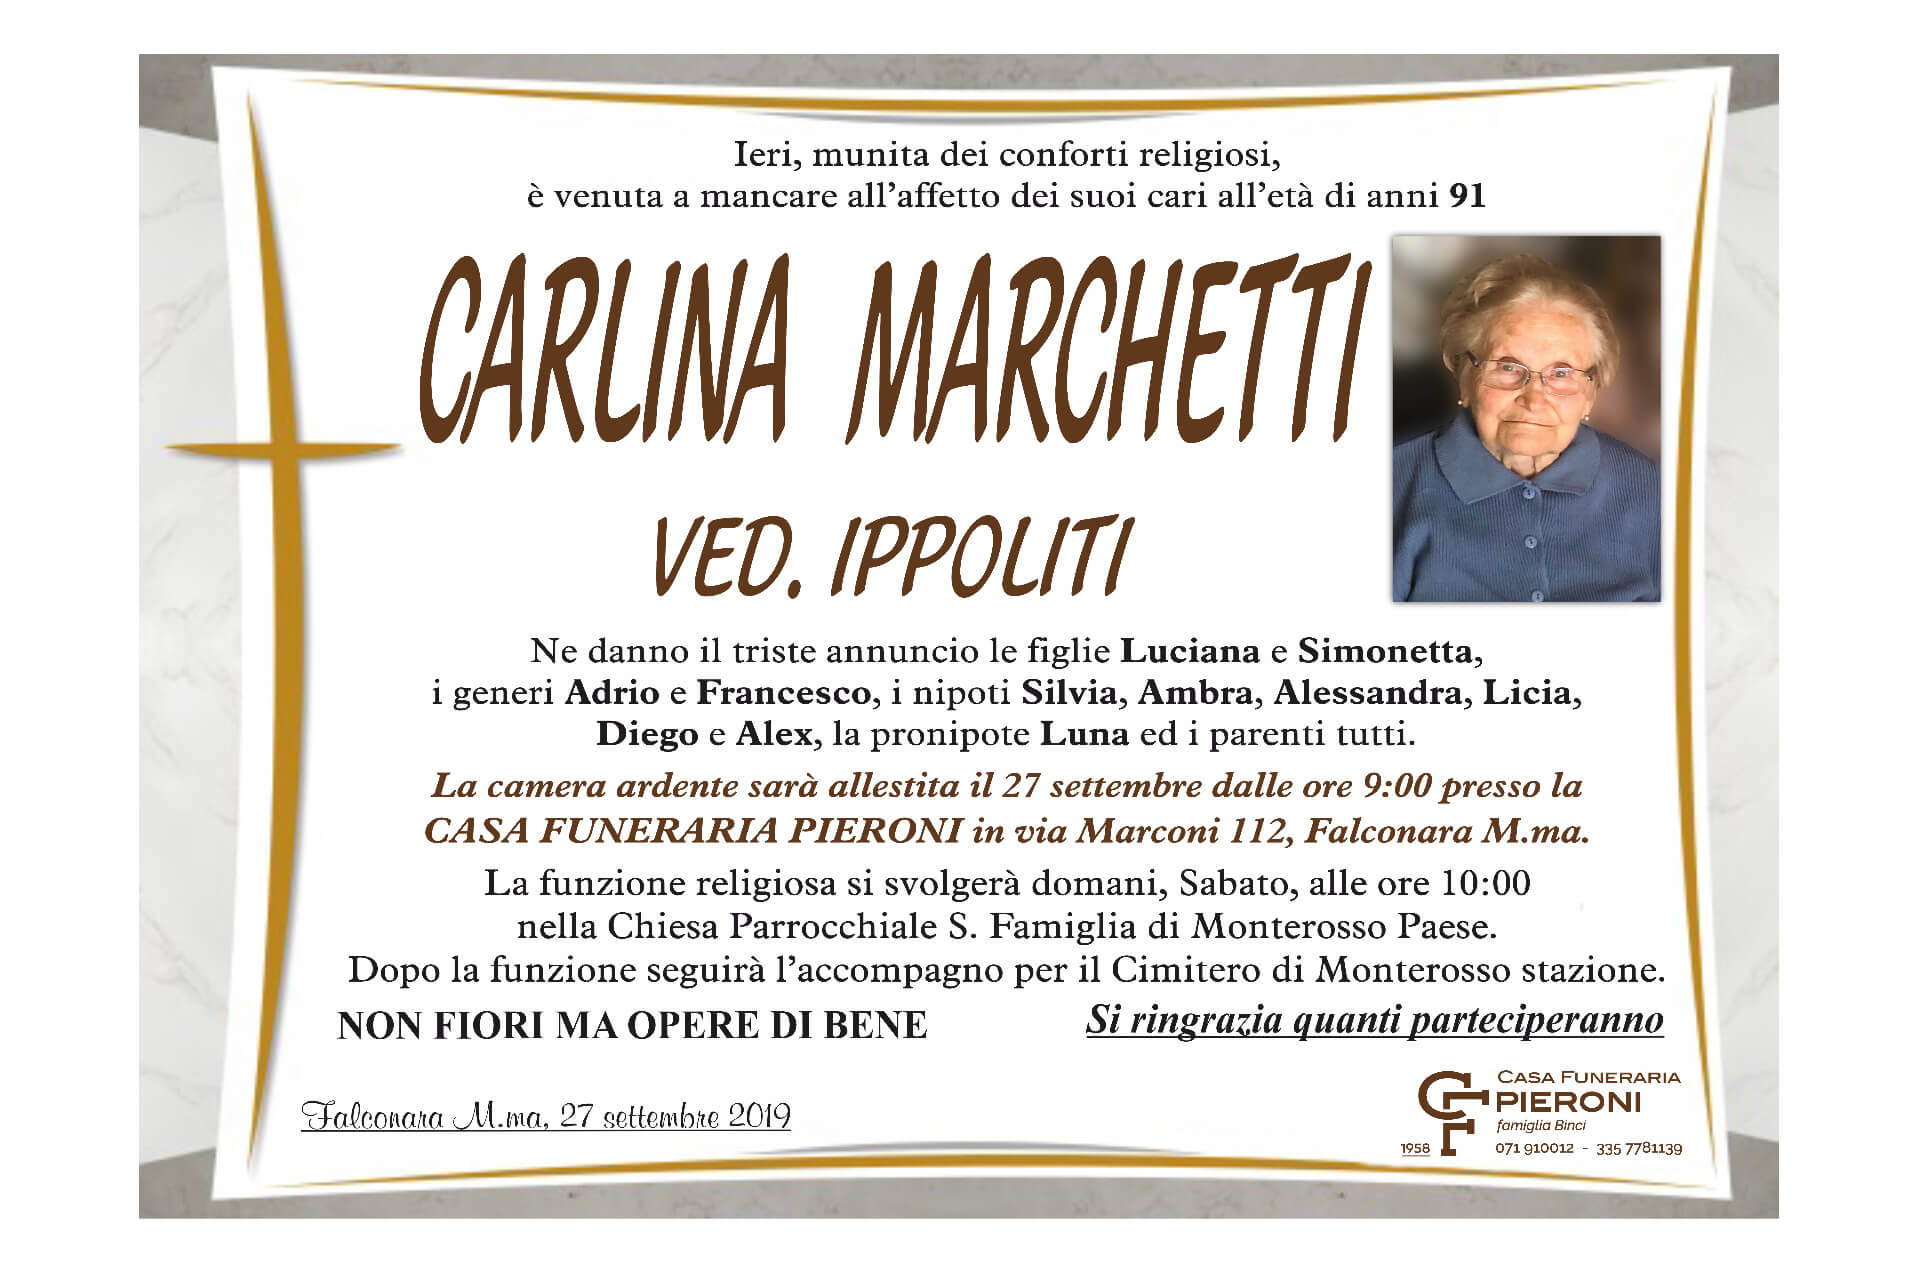 Carlina Marchetti